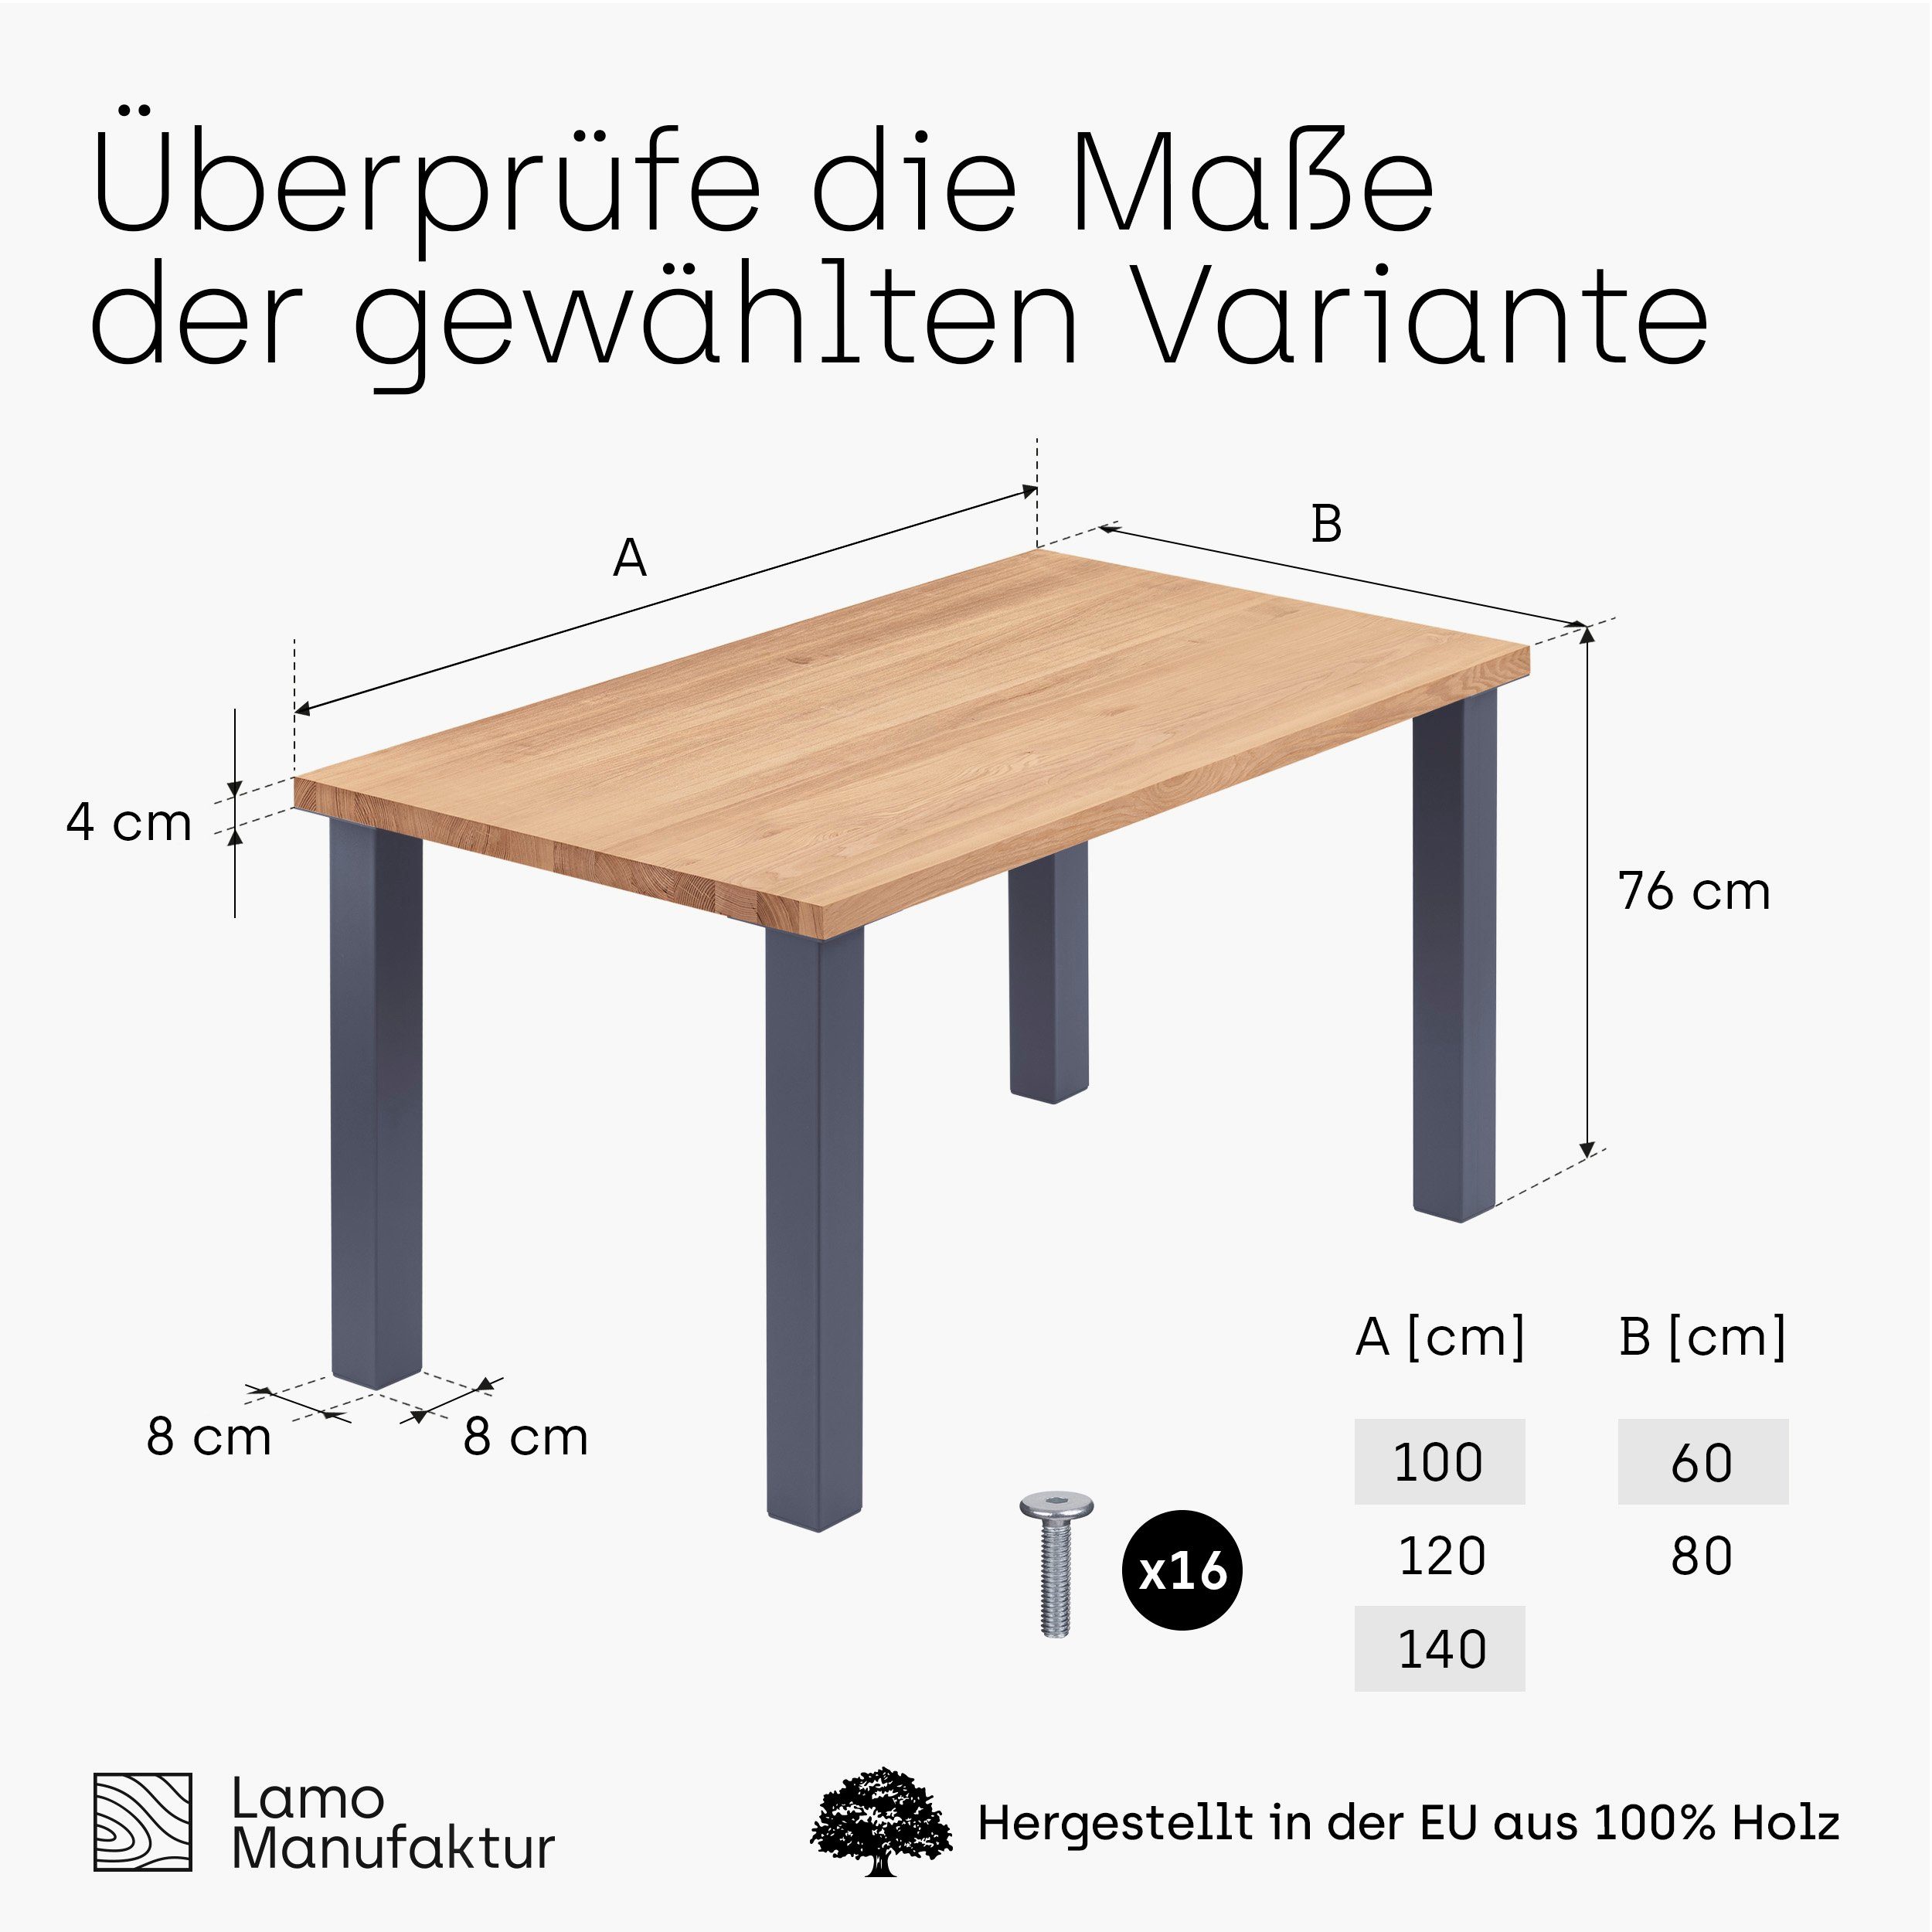 LAMO Manufaktur Kante (1 Classic Küchentisch Anthrazit inkl. Natur | gerade Tisch), Tischplatte Esstisch Massivholz Metallgestell